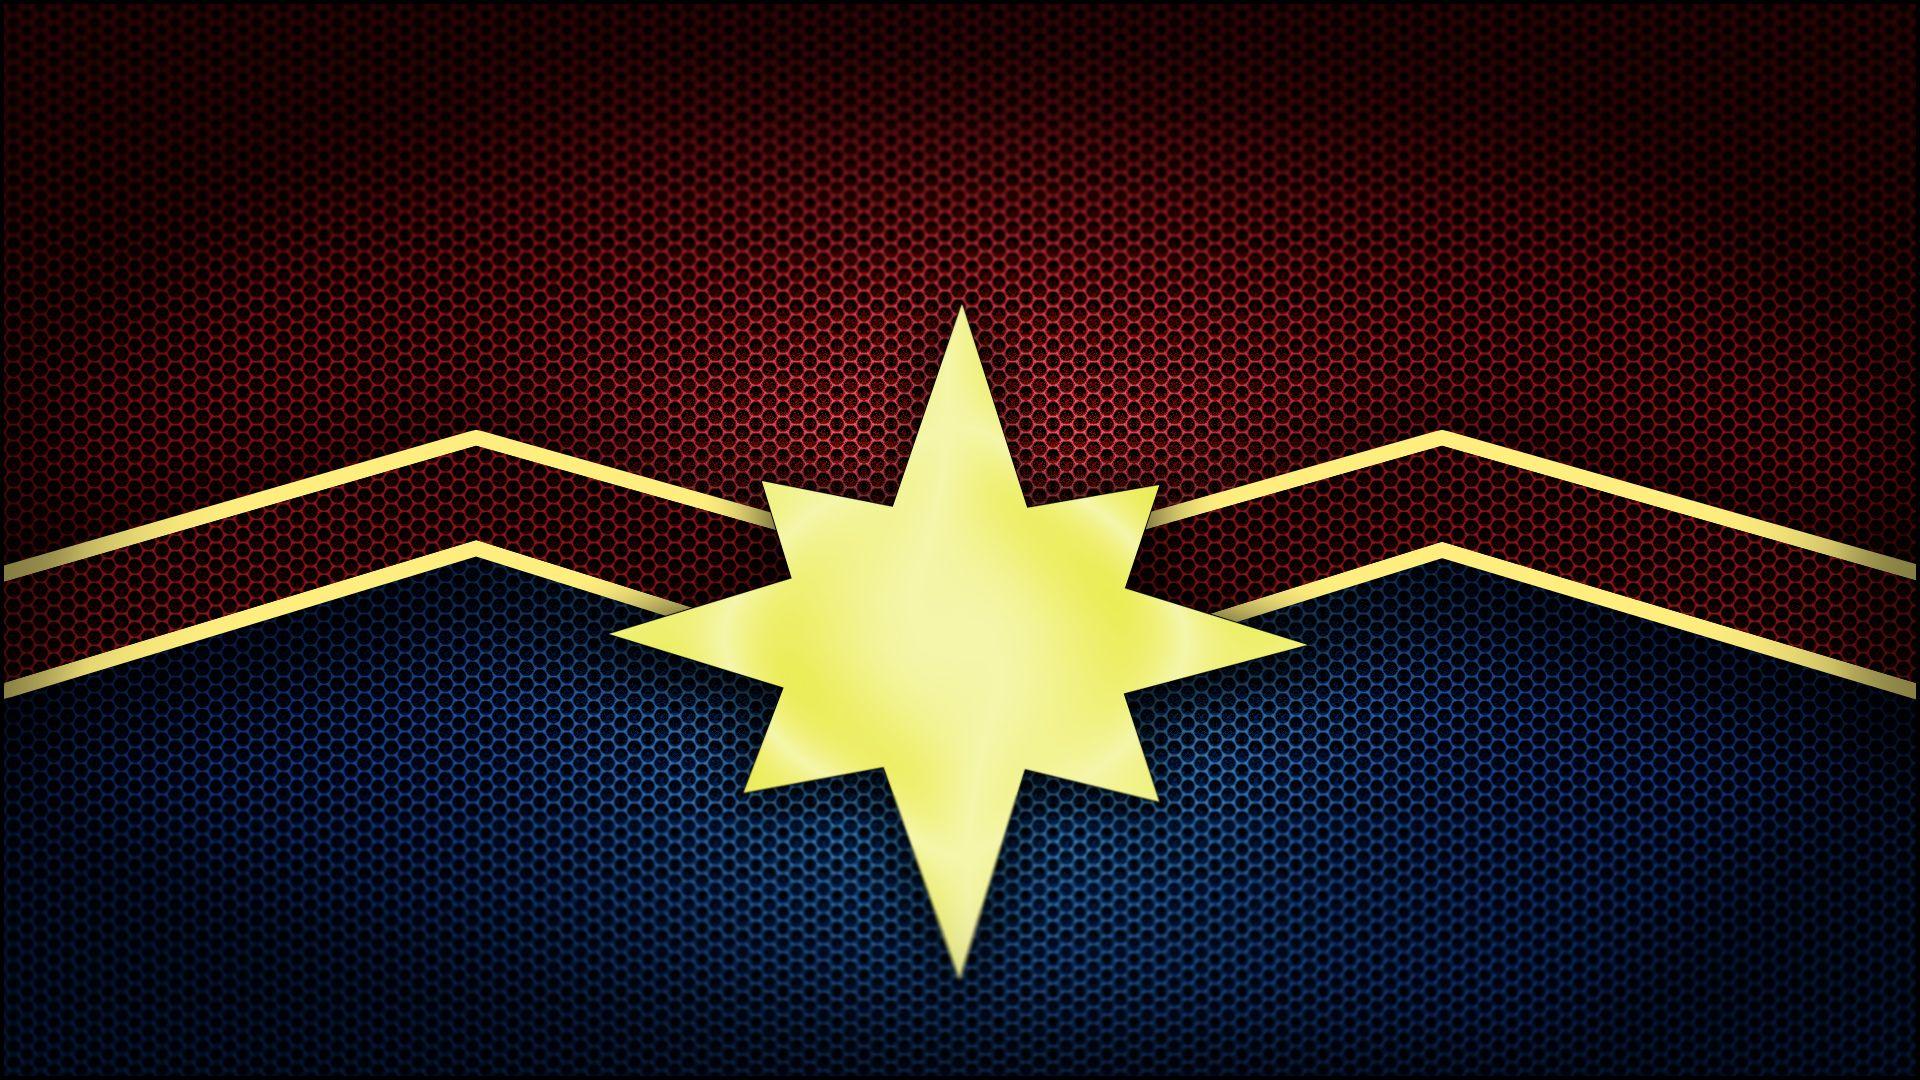 Marvel 2018 Logo - 1920x1080 Captain Marvel Logo Laptop Full HD 1080P HD 4k Wallpapers ...